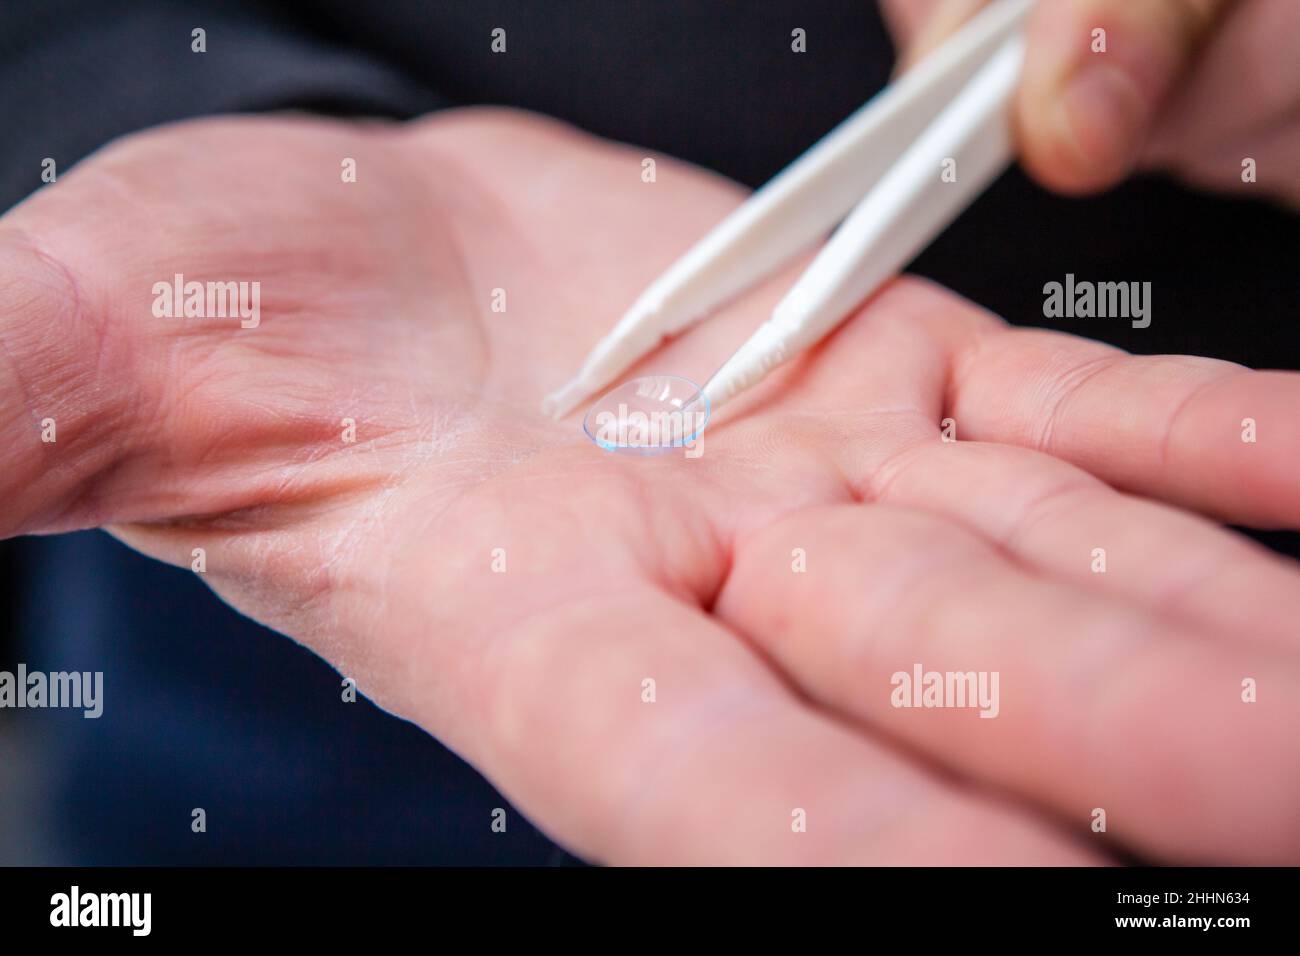 Un opticien masculin montre une lentille de contact claire et propre reposant sur la paume de sa main à l'aide d'une pince à épiler Banque D'Images